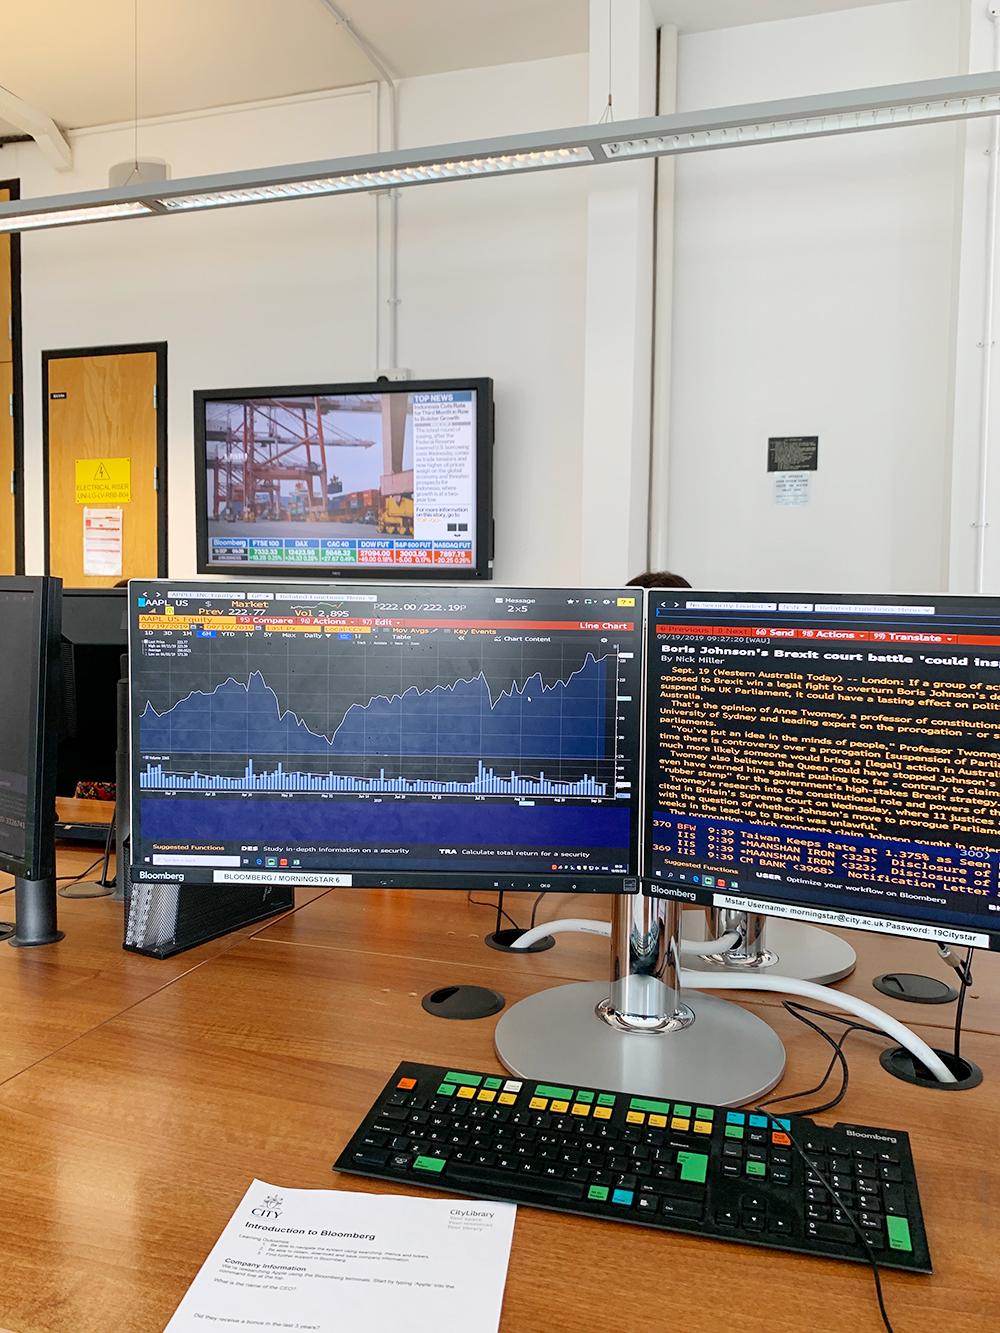 Блумберг-терминал — компьютер для поиска финансовой информации, который покупают по подписке стоимостью более 1 000 000 ₽ в год. В университете их около тридцати